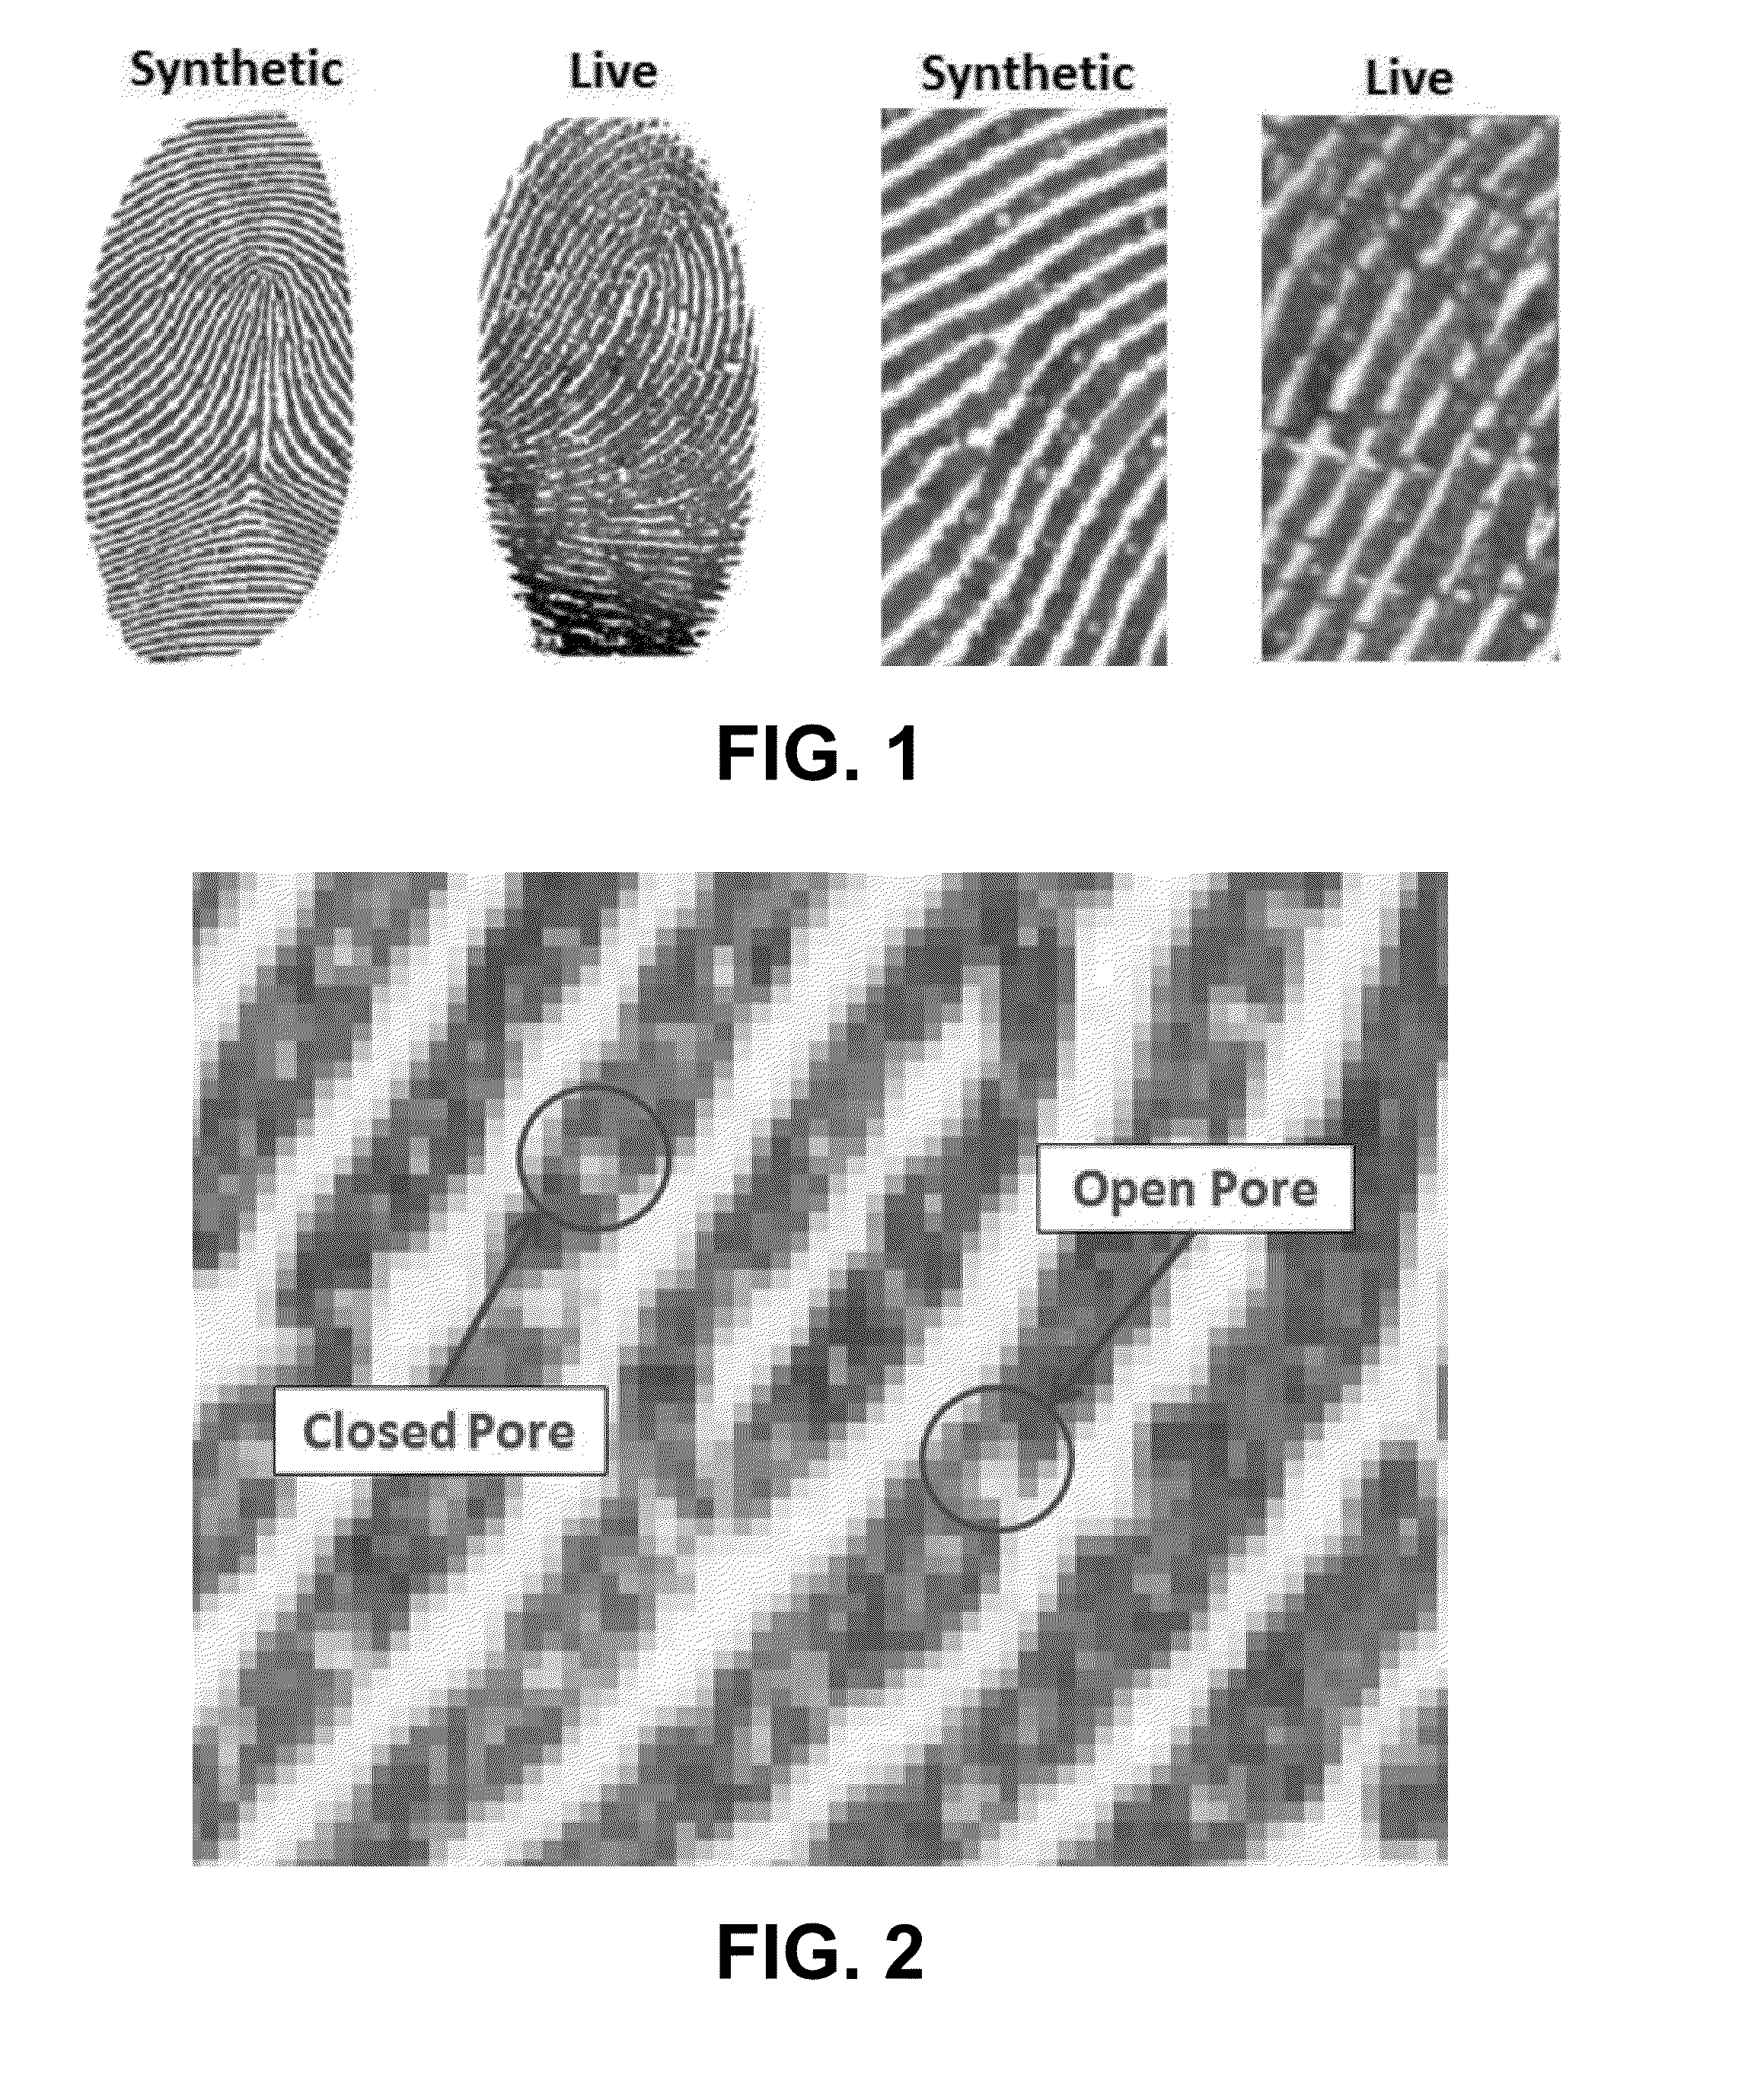 Fingerprint pore analysis for liveness detection